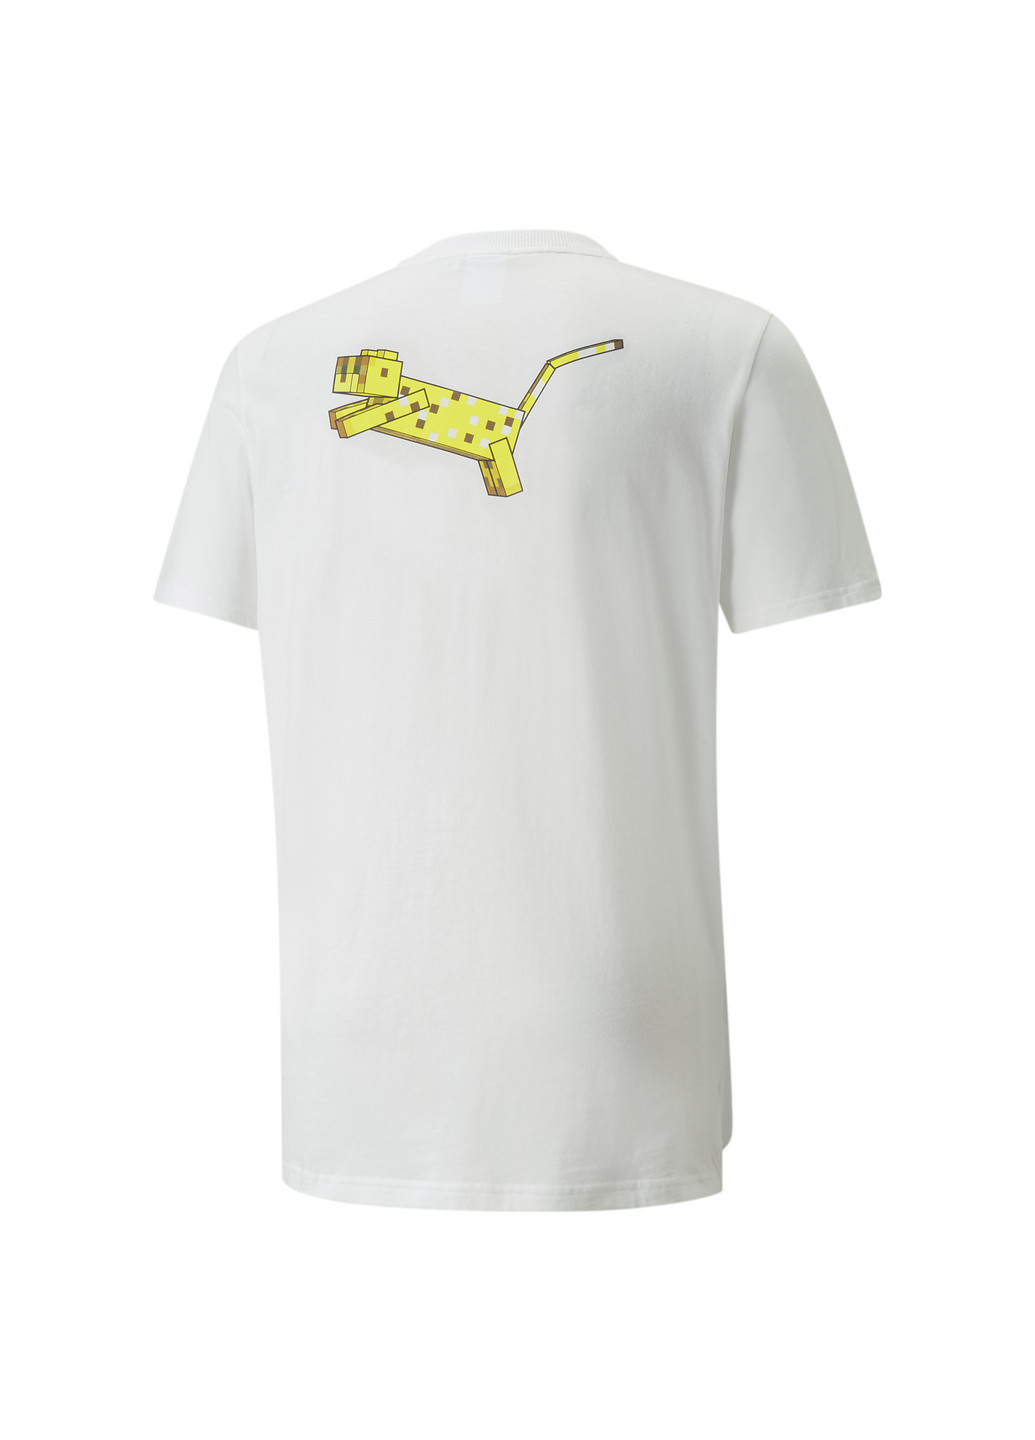 Футболка x MINECRAFT Graphic Men's Tee Puma однотонная белая спортивная хлопок, полиэстер